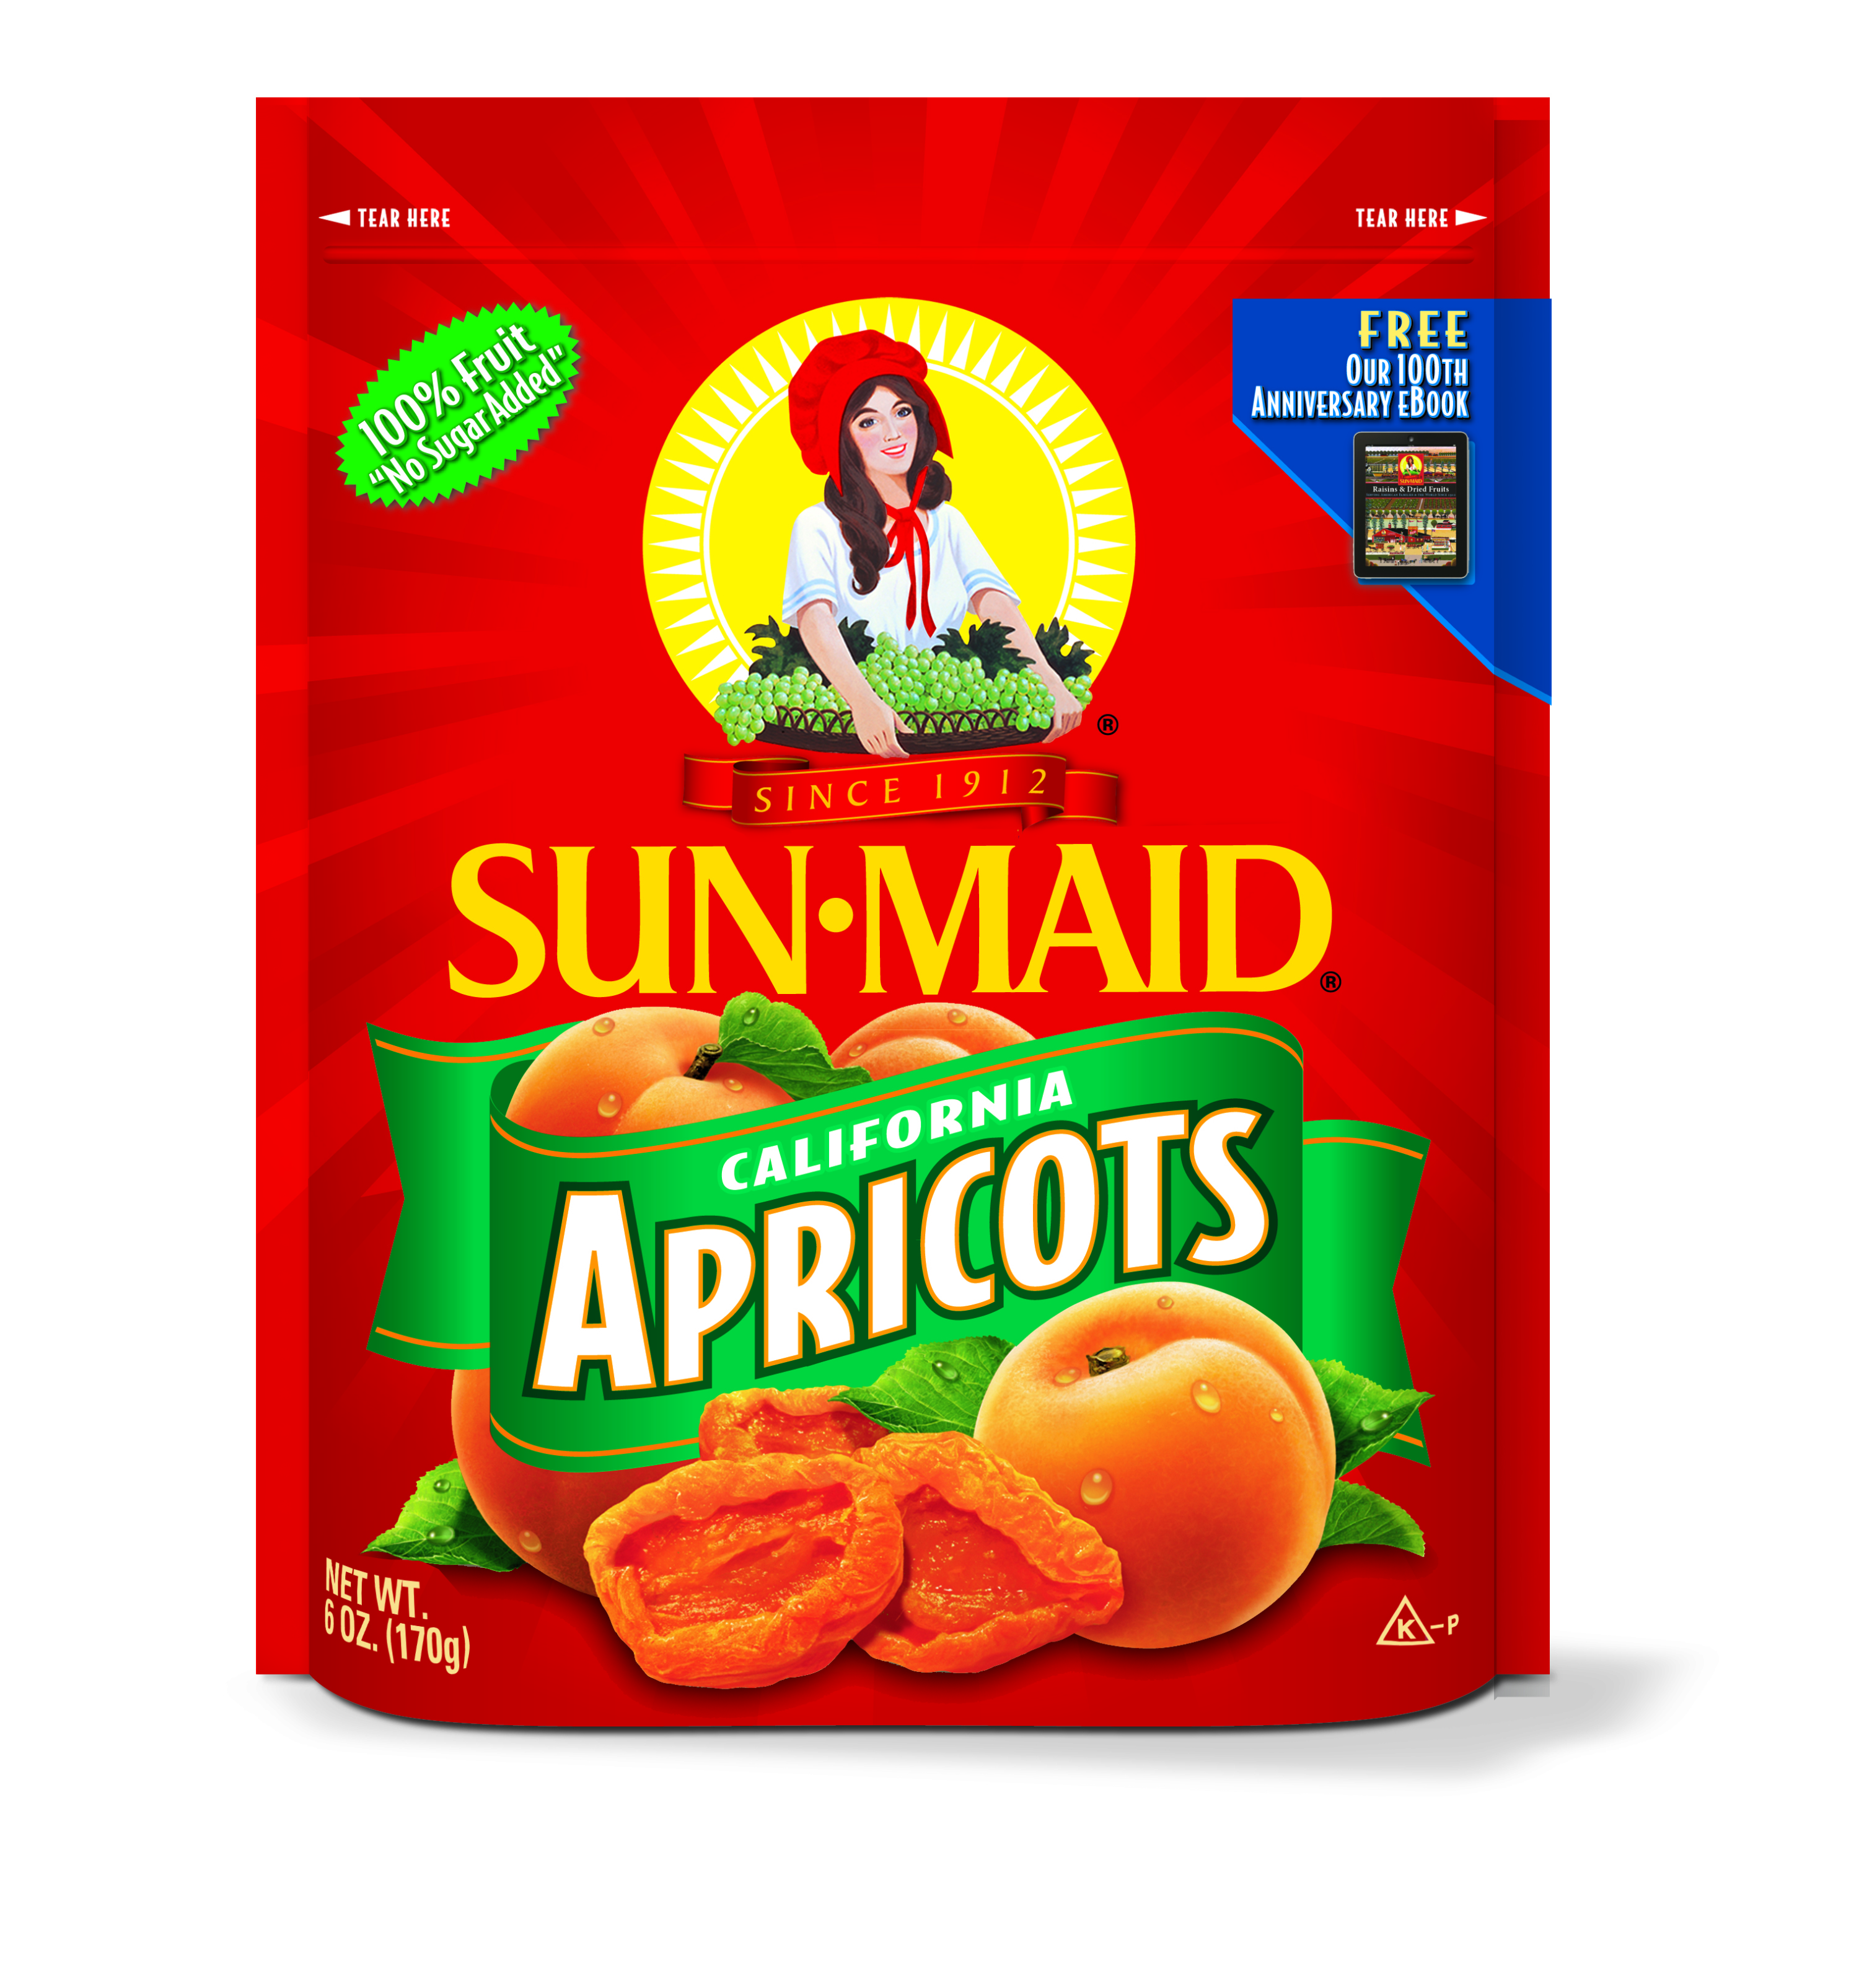 Apricosts